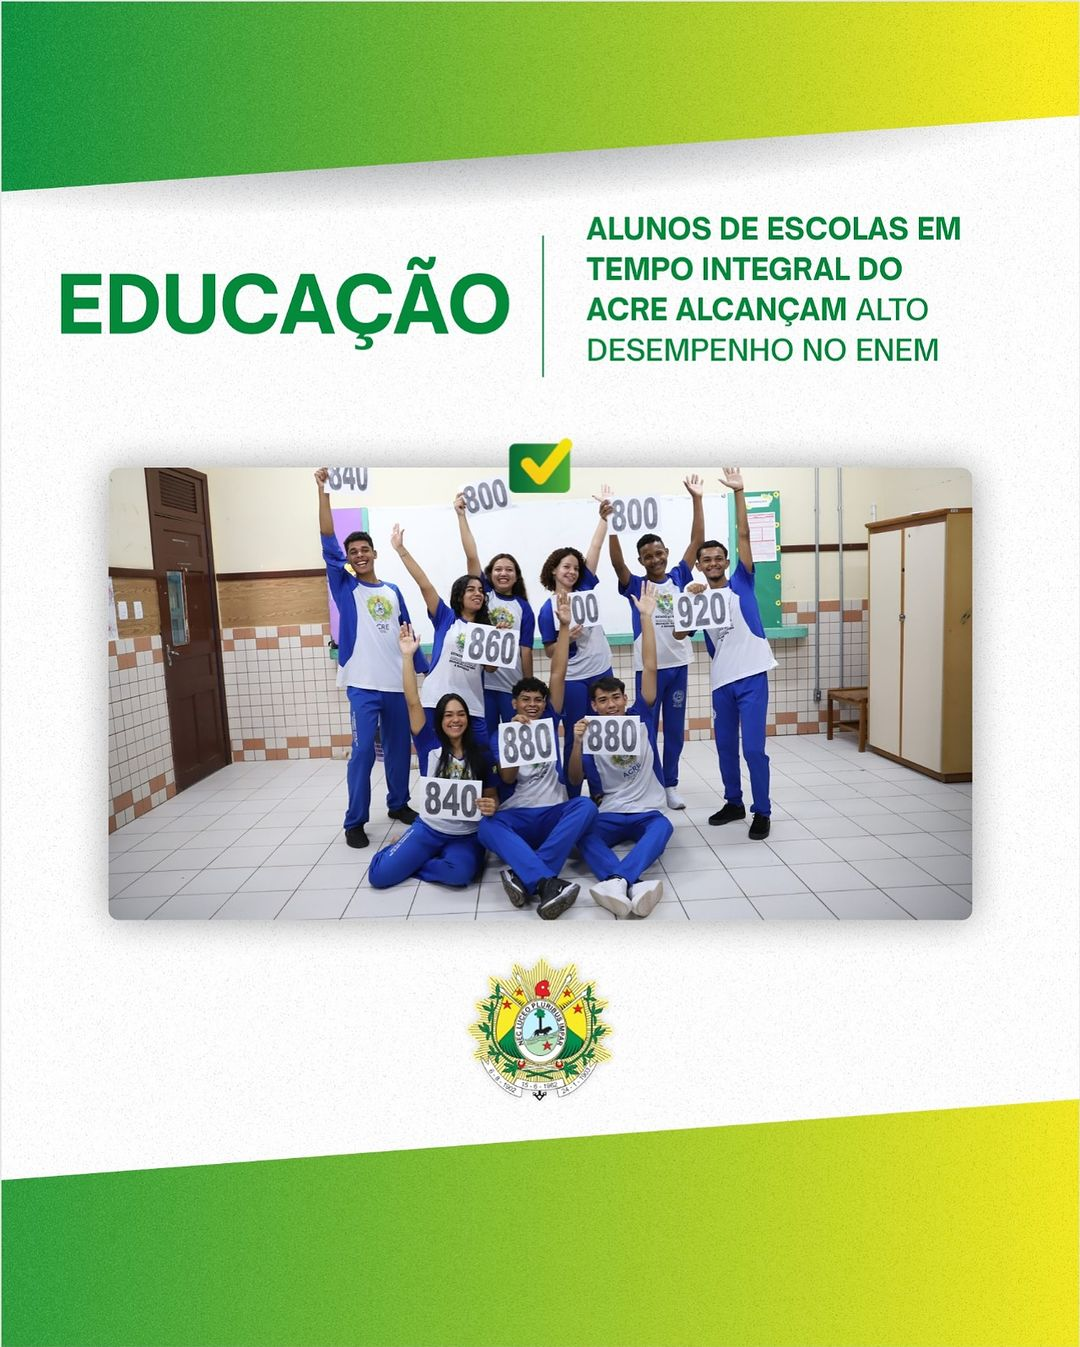 Alunos de escolas em tempo integral do Acre alcançam alto desempenho no ENEM